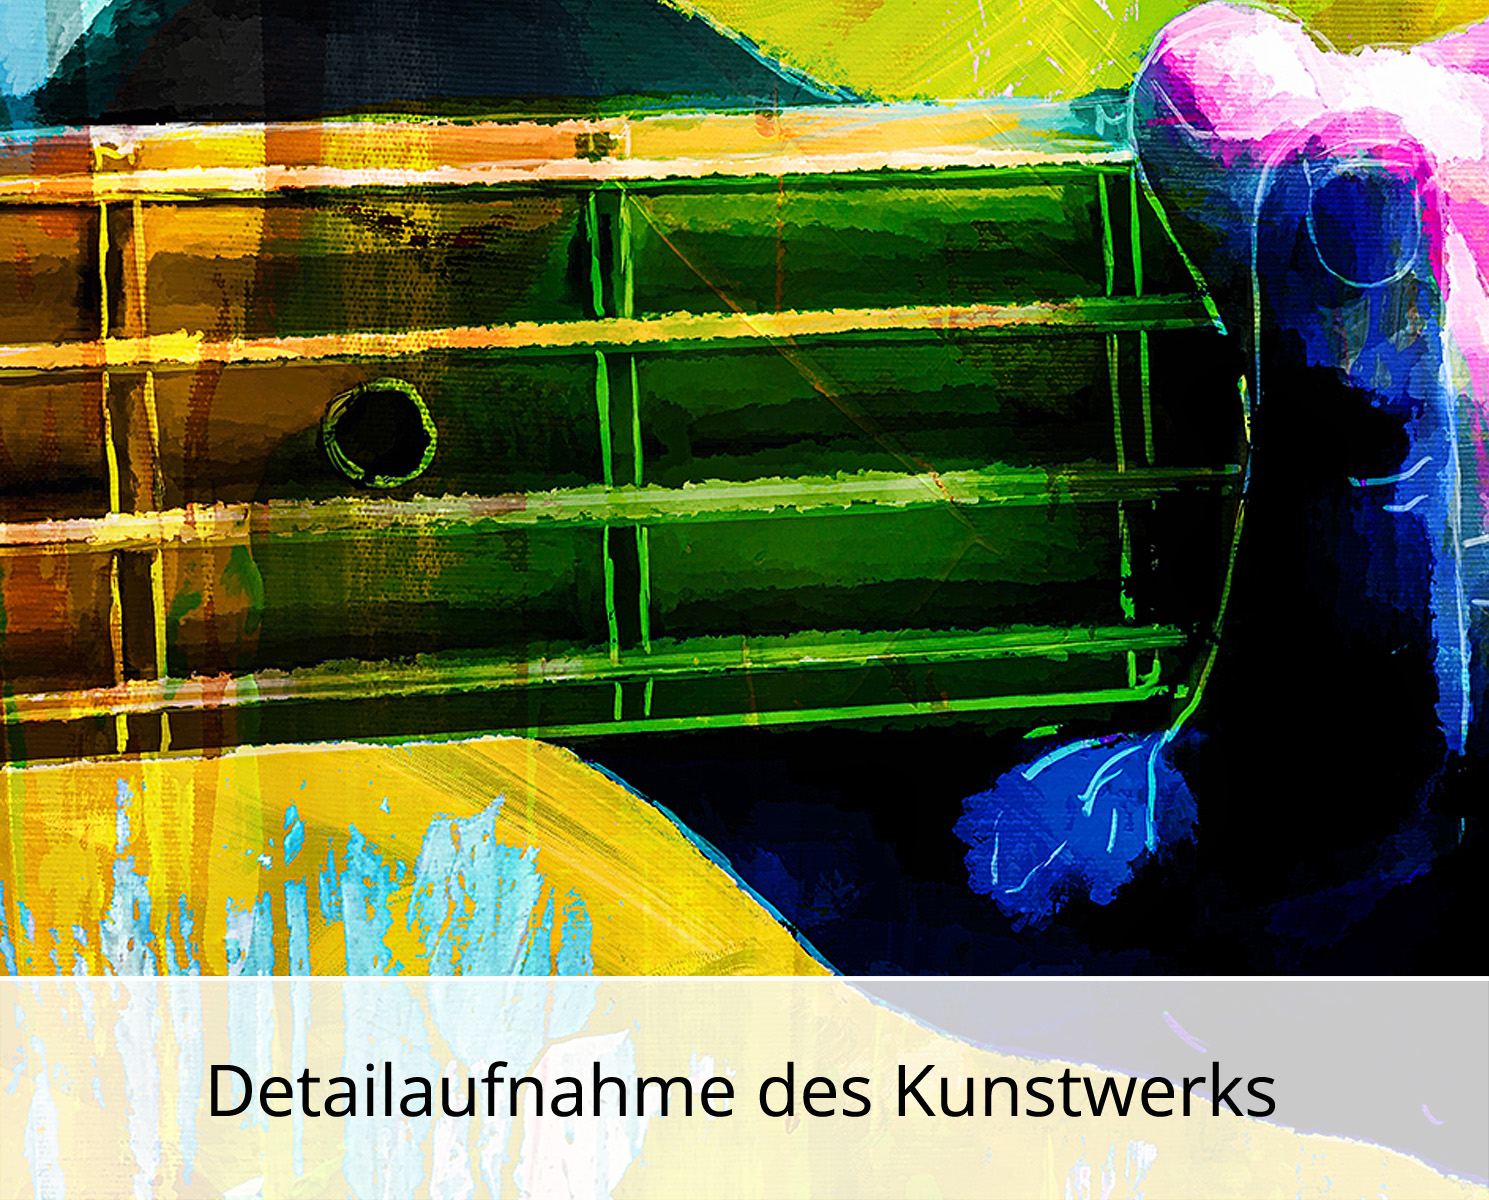 Moderne Pop Art: Bass Player II, H. Mühlbauer-Gardemin, Original/serielles Unikat